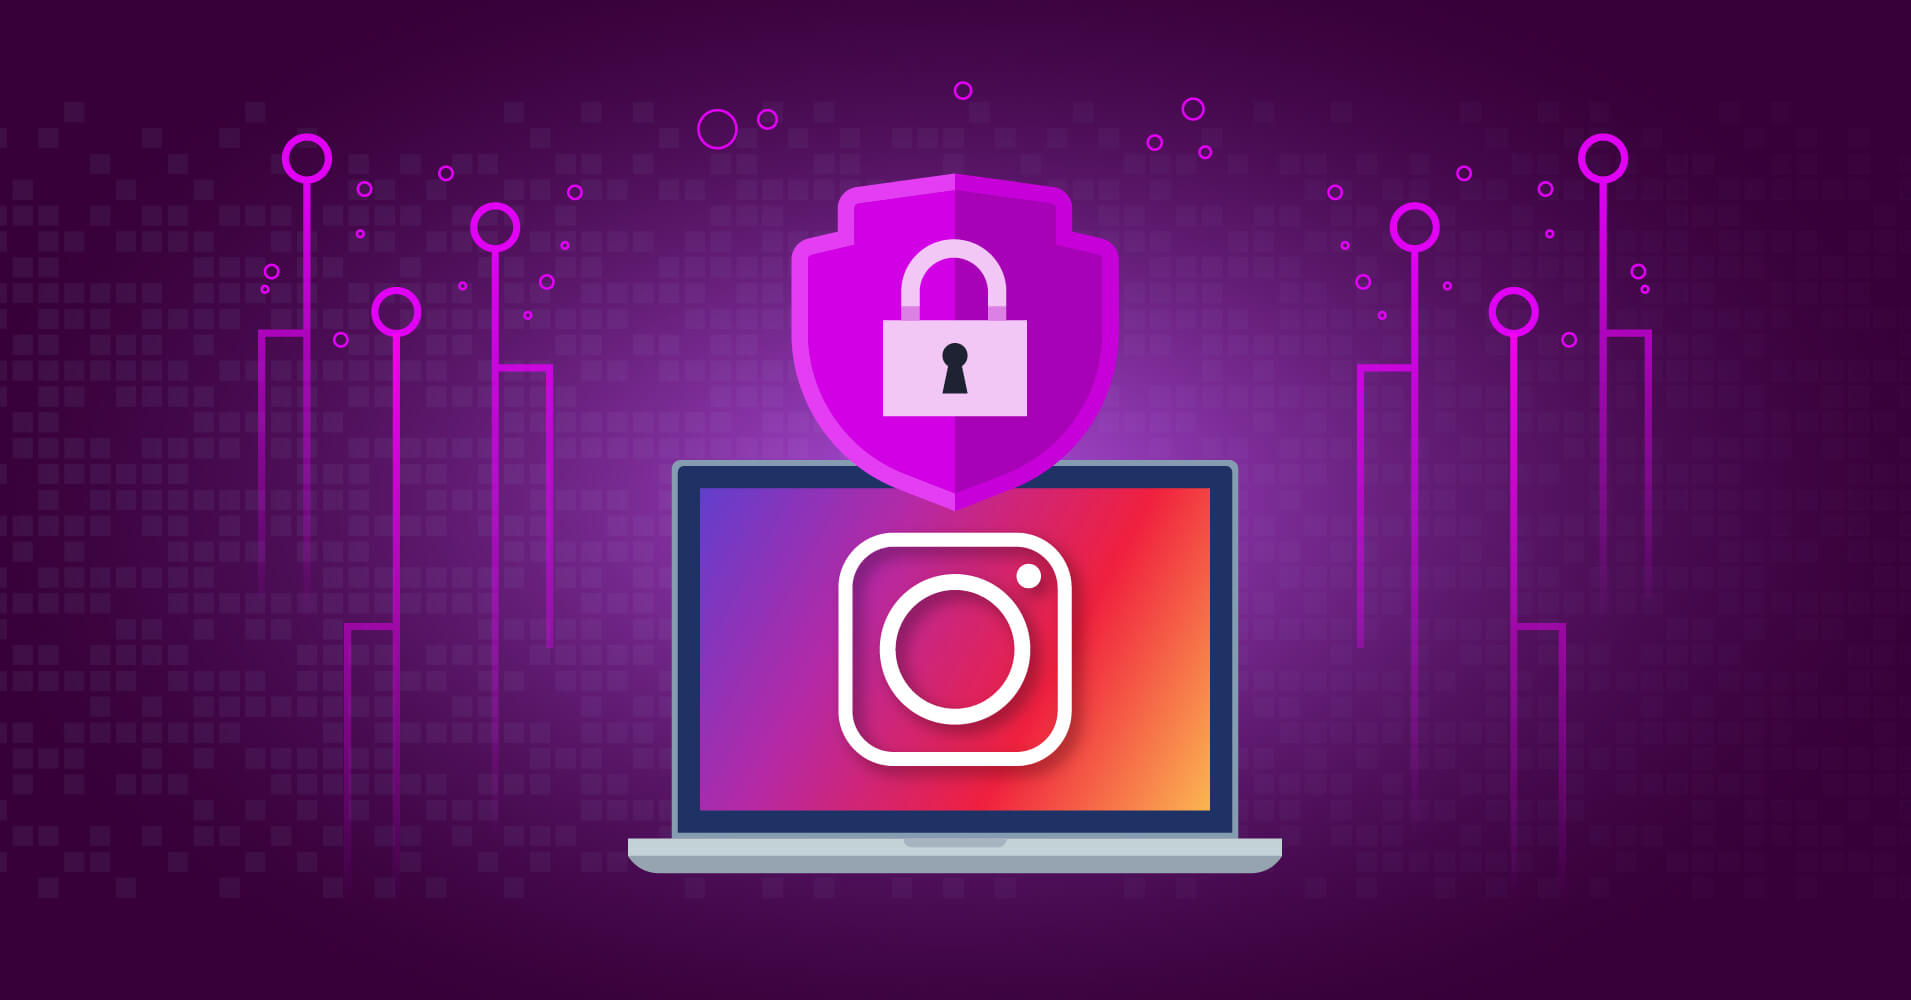 How to Get Instagram Access Token in 2 Minutes